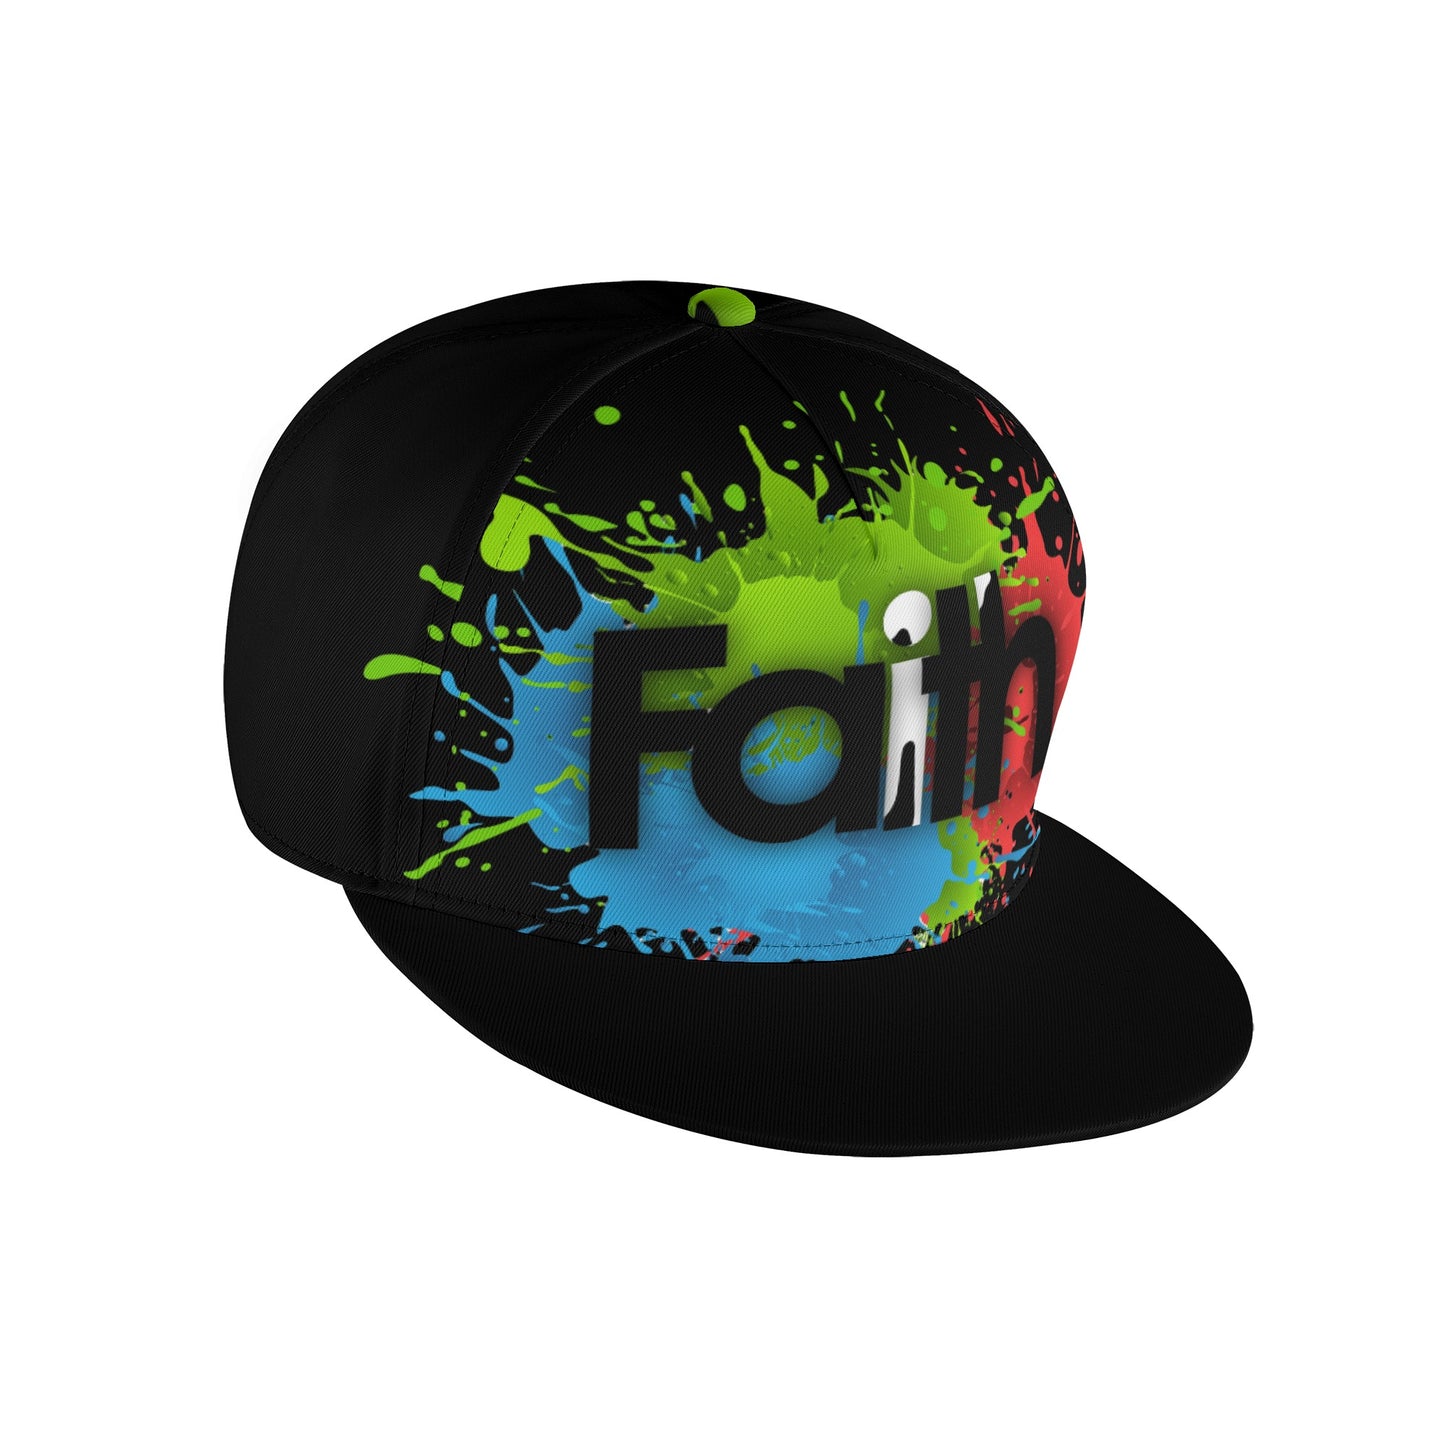 T4x Black Faith Hip-hop Caps